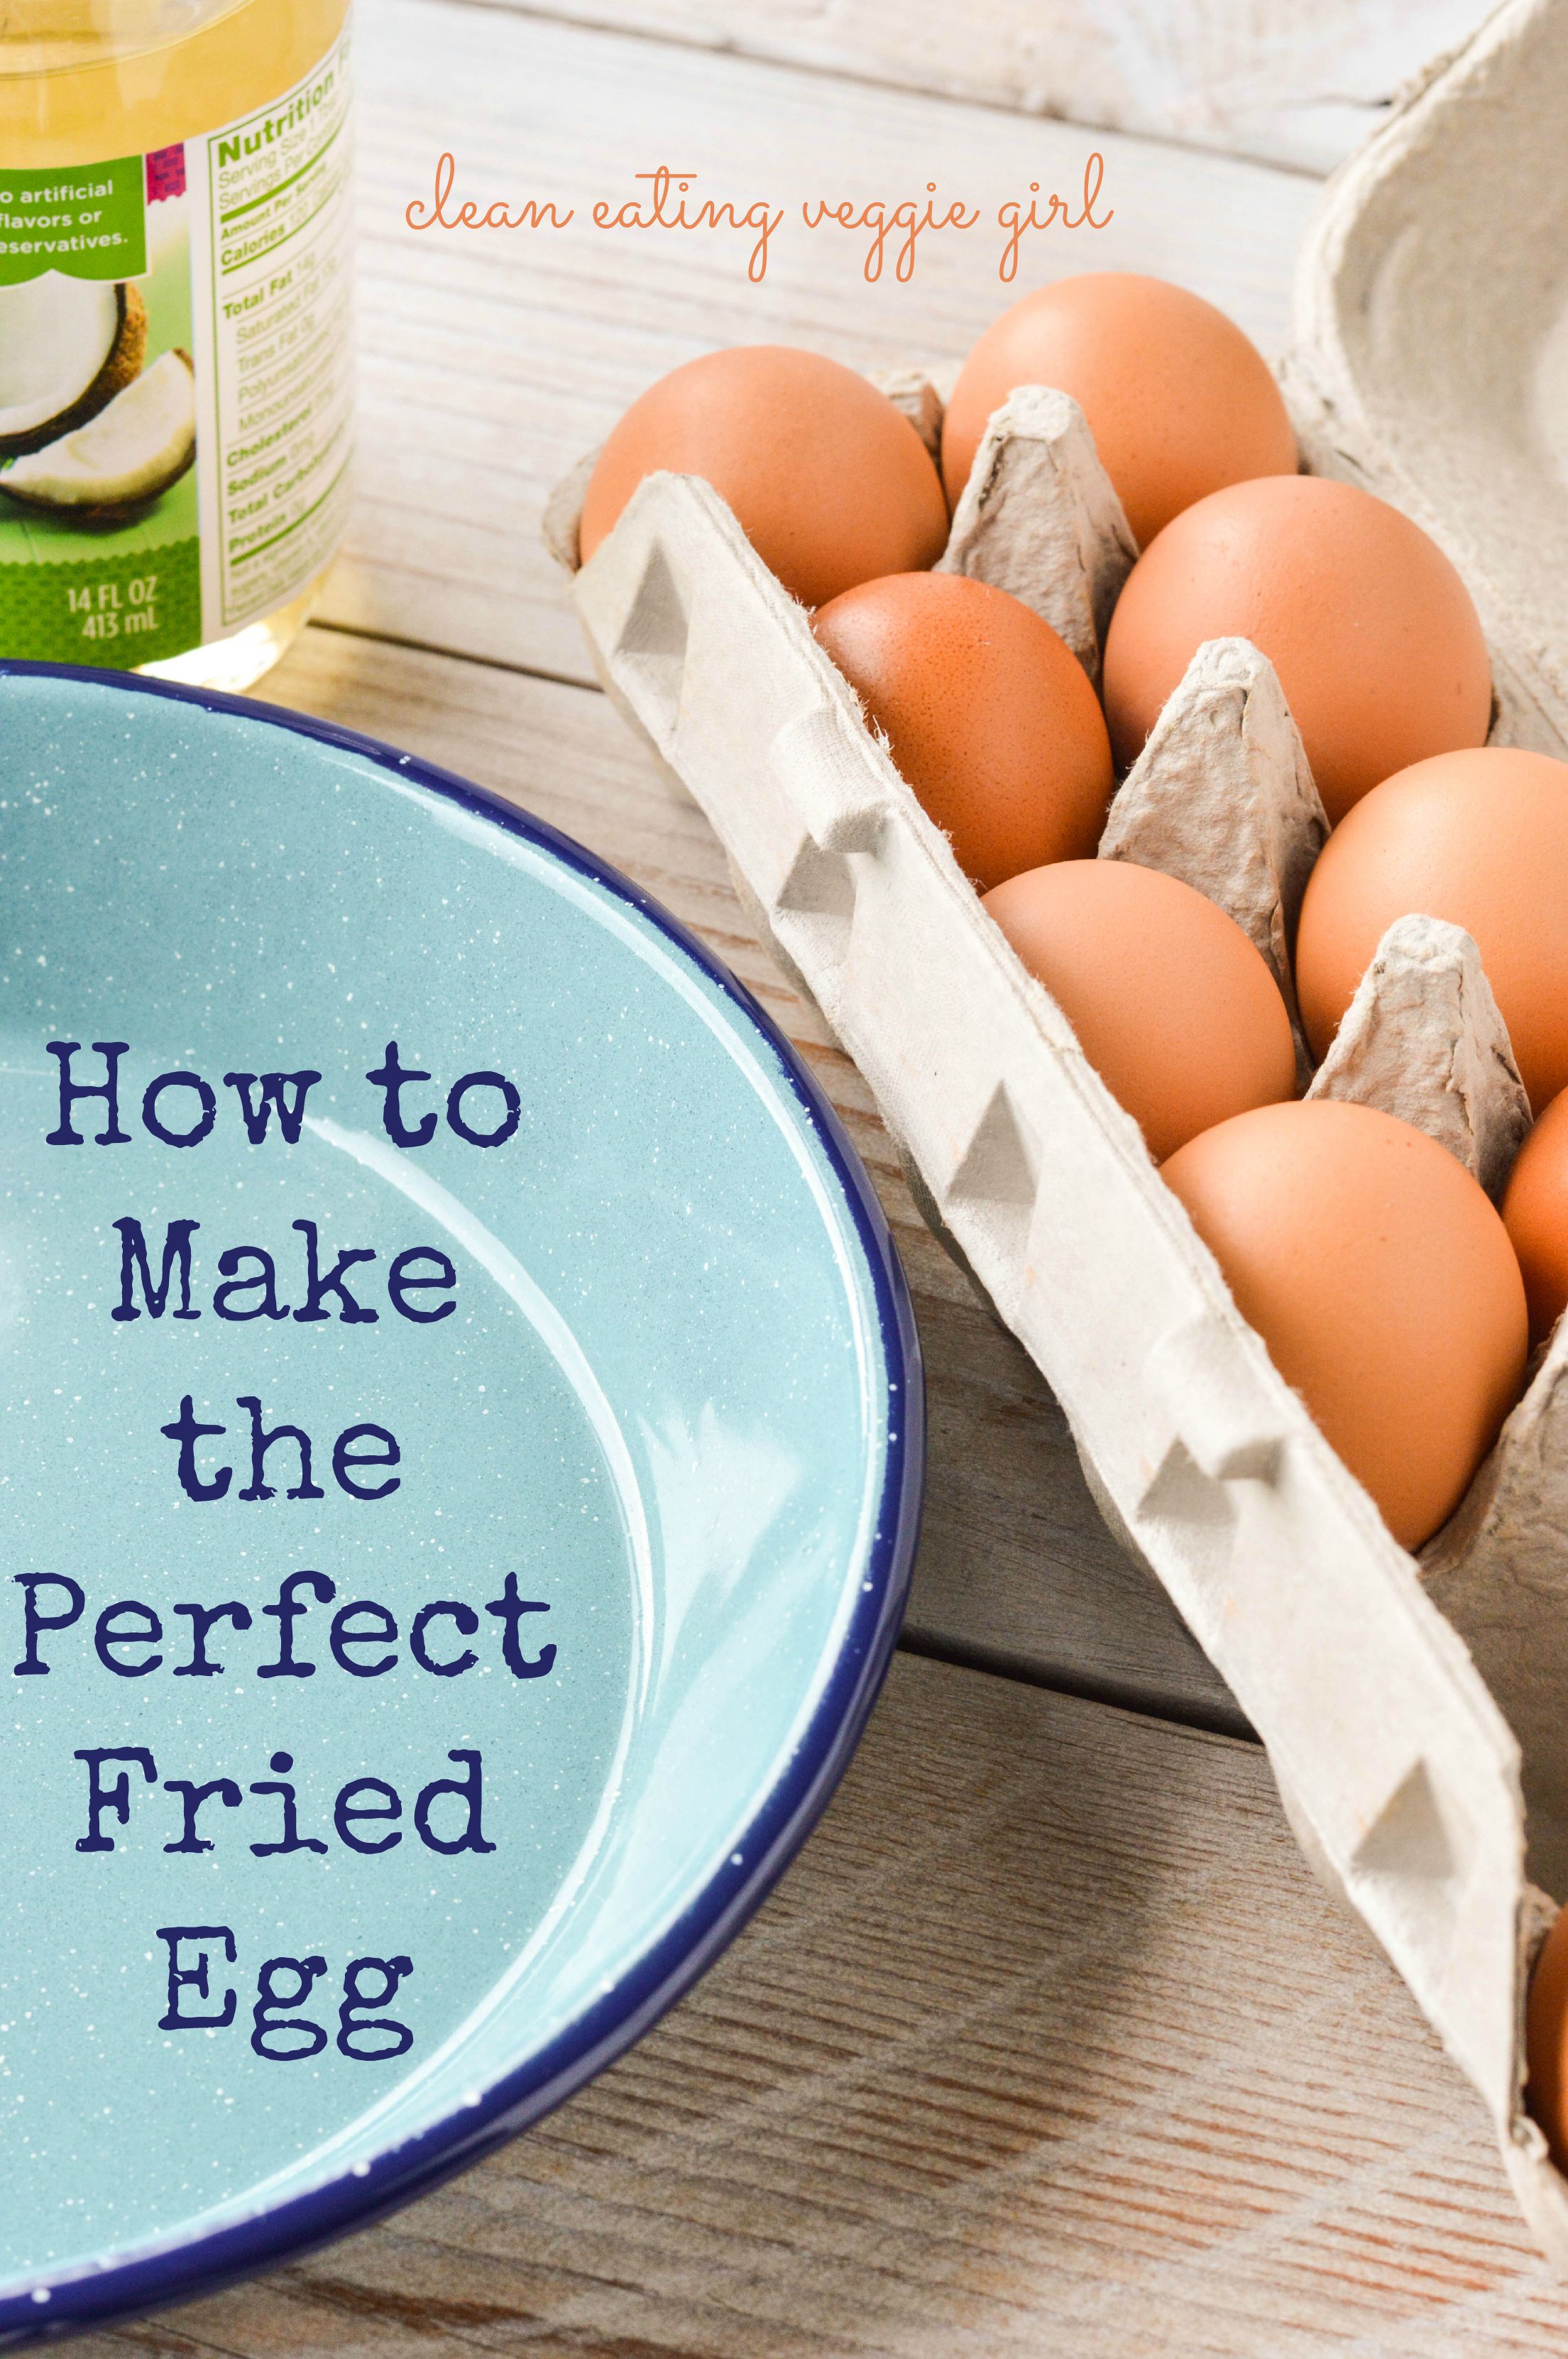 https://cleaneatingveggiegirl.com/wp-content/uploads/2015/07/how_to_make_fried_egg-2-graphic.jpg